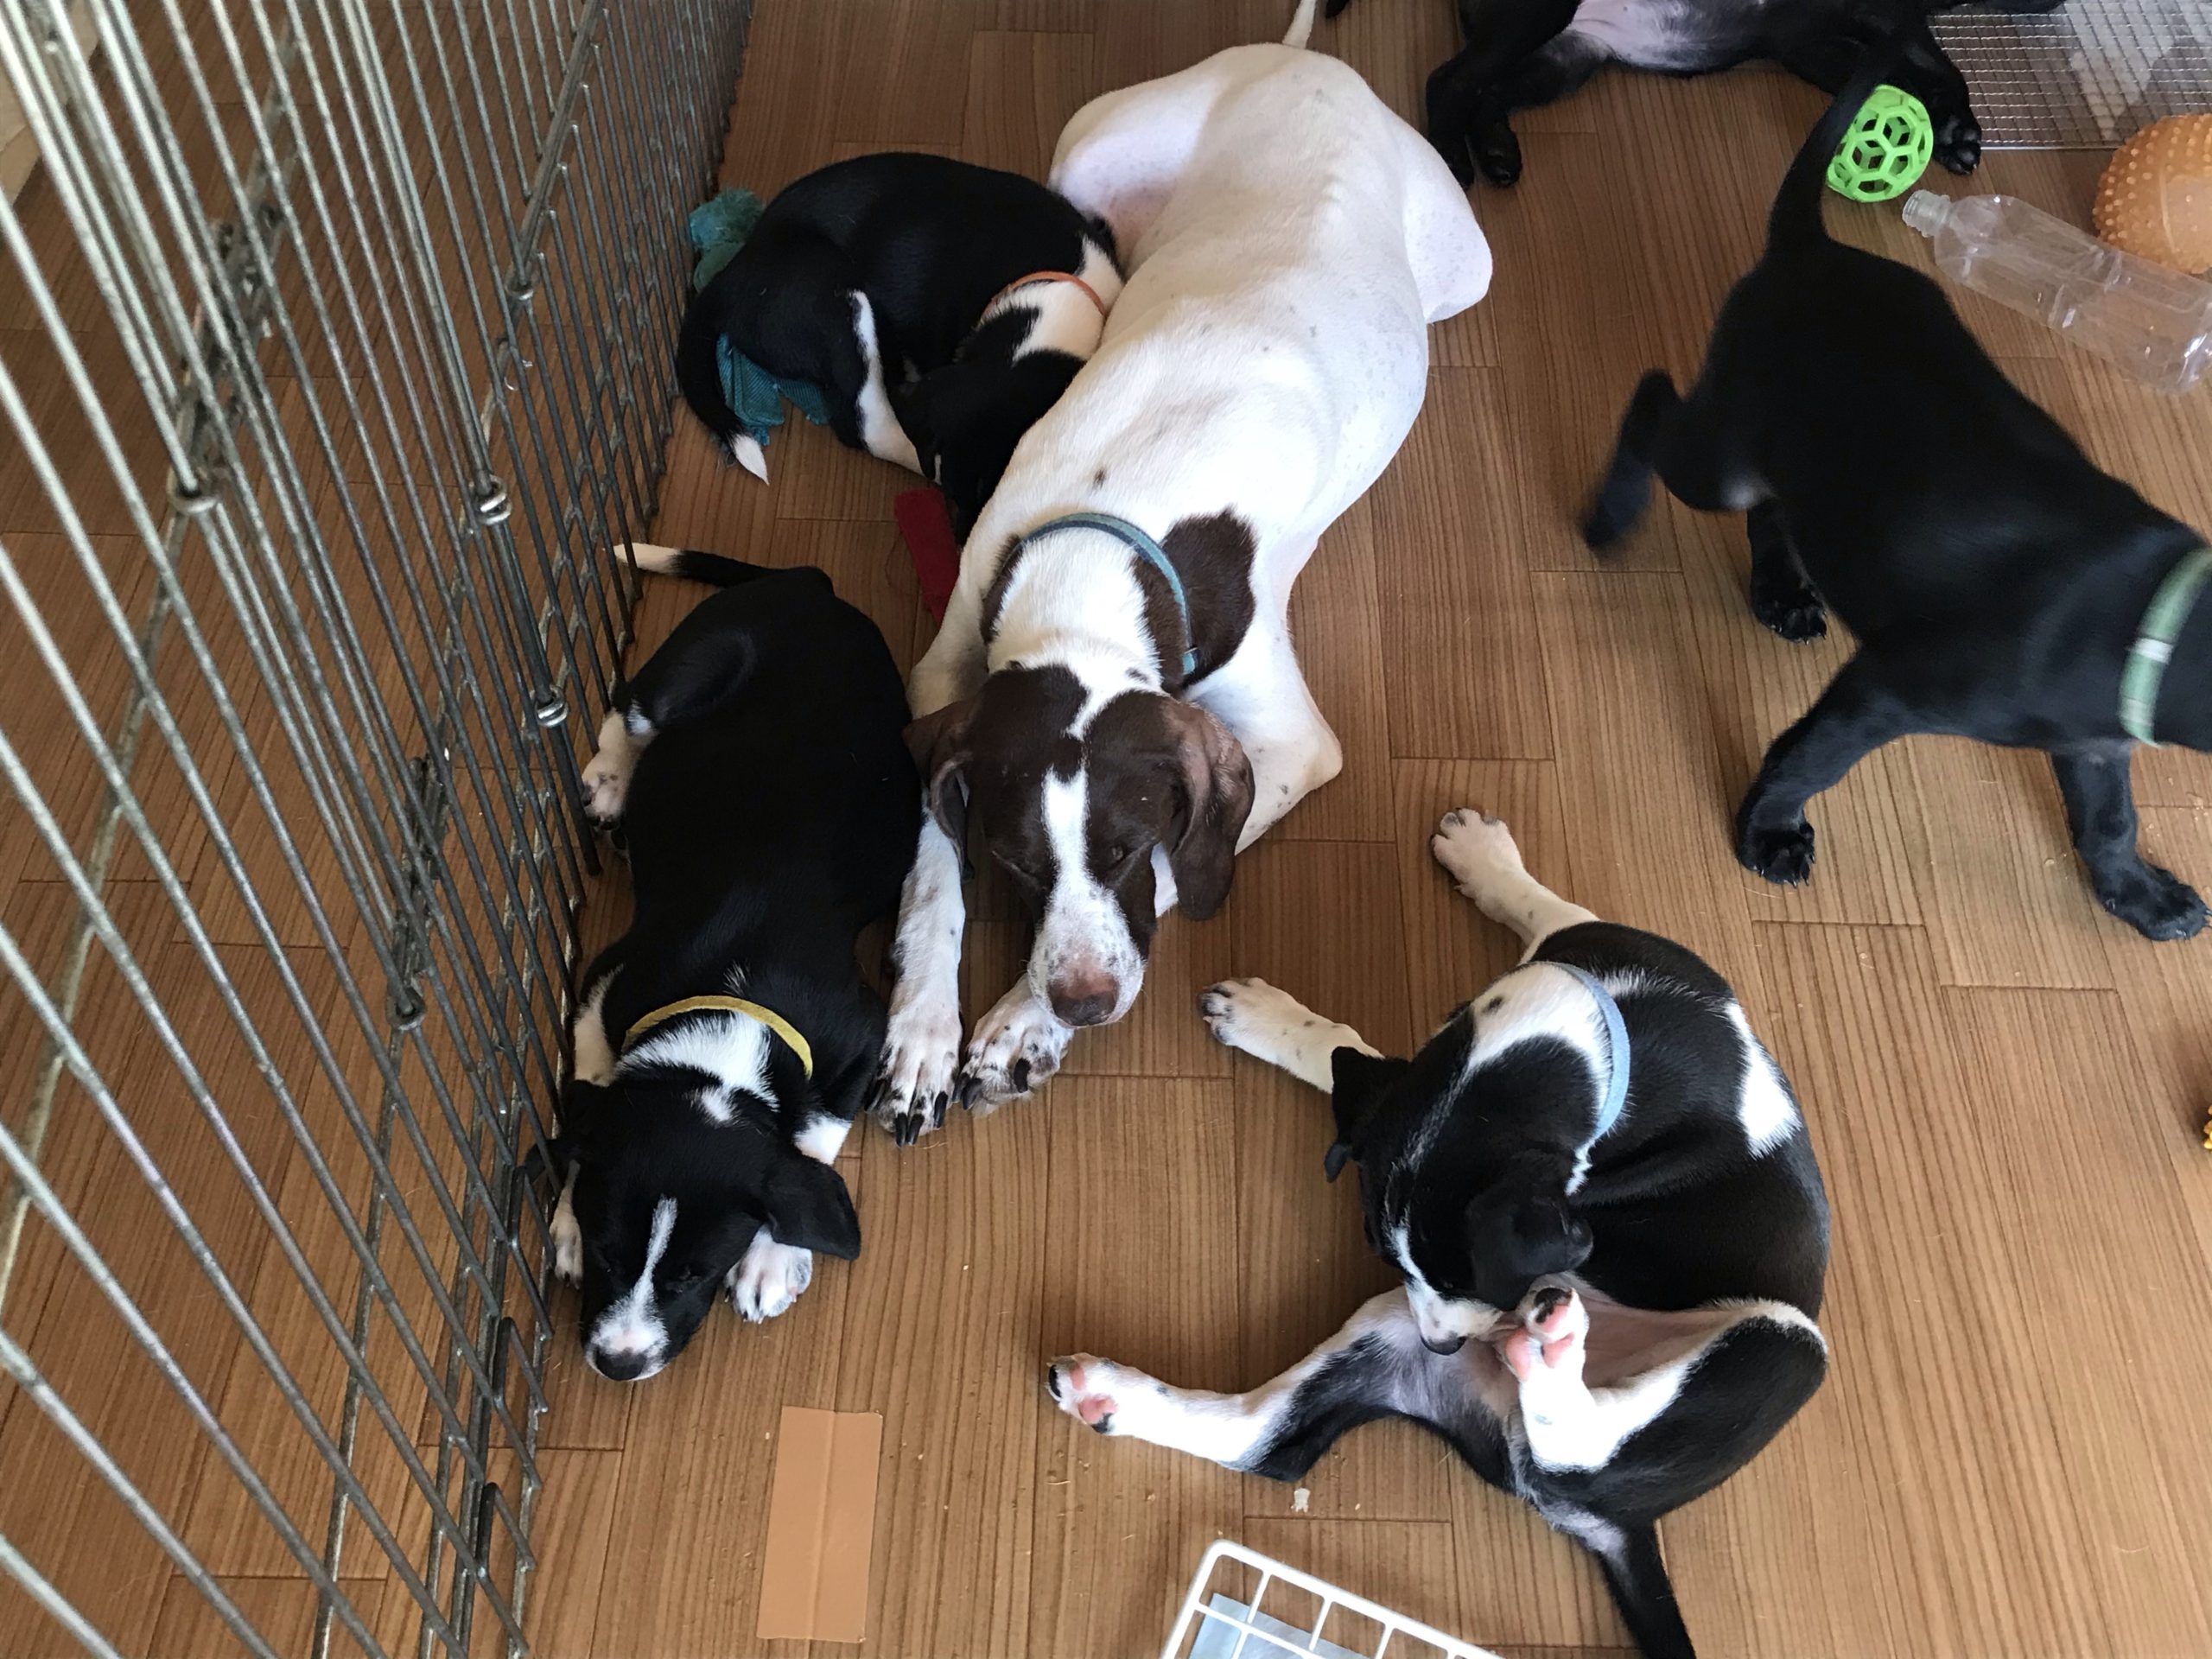 大型犬の仔犬はパワフルだ と思う日々 奏音と仔犬たち58日目 チャコまま 茨城 犬の里親探し 保護犬活動の個人ボランティア